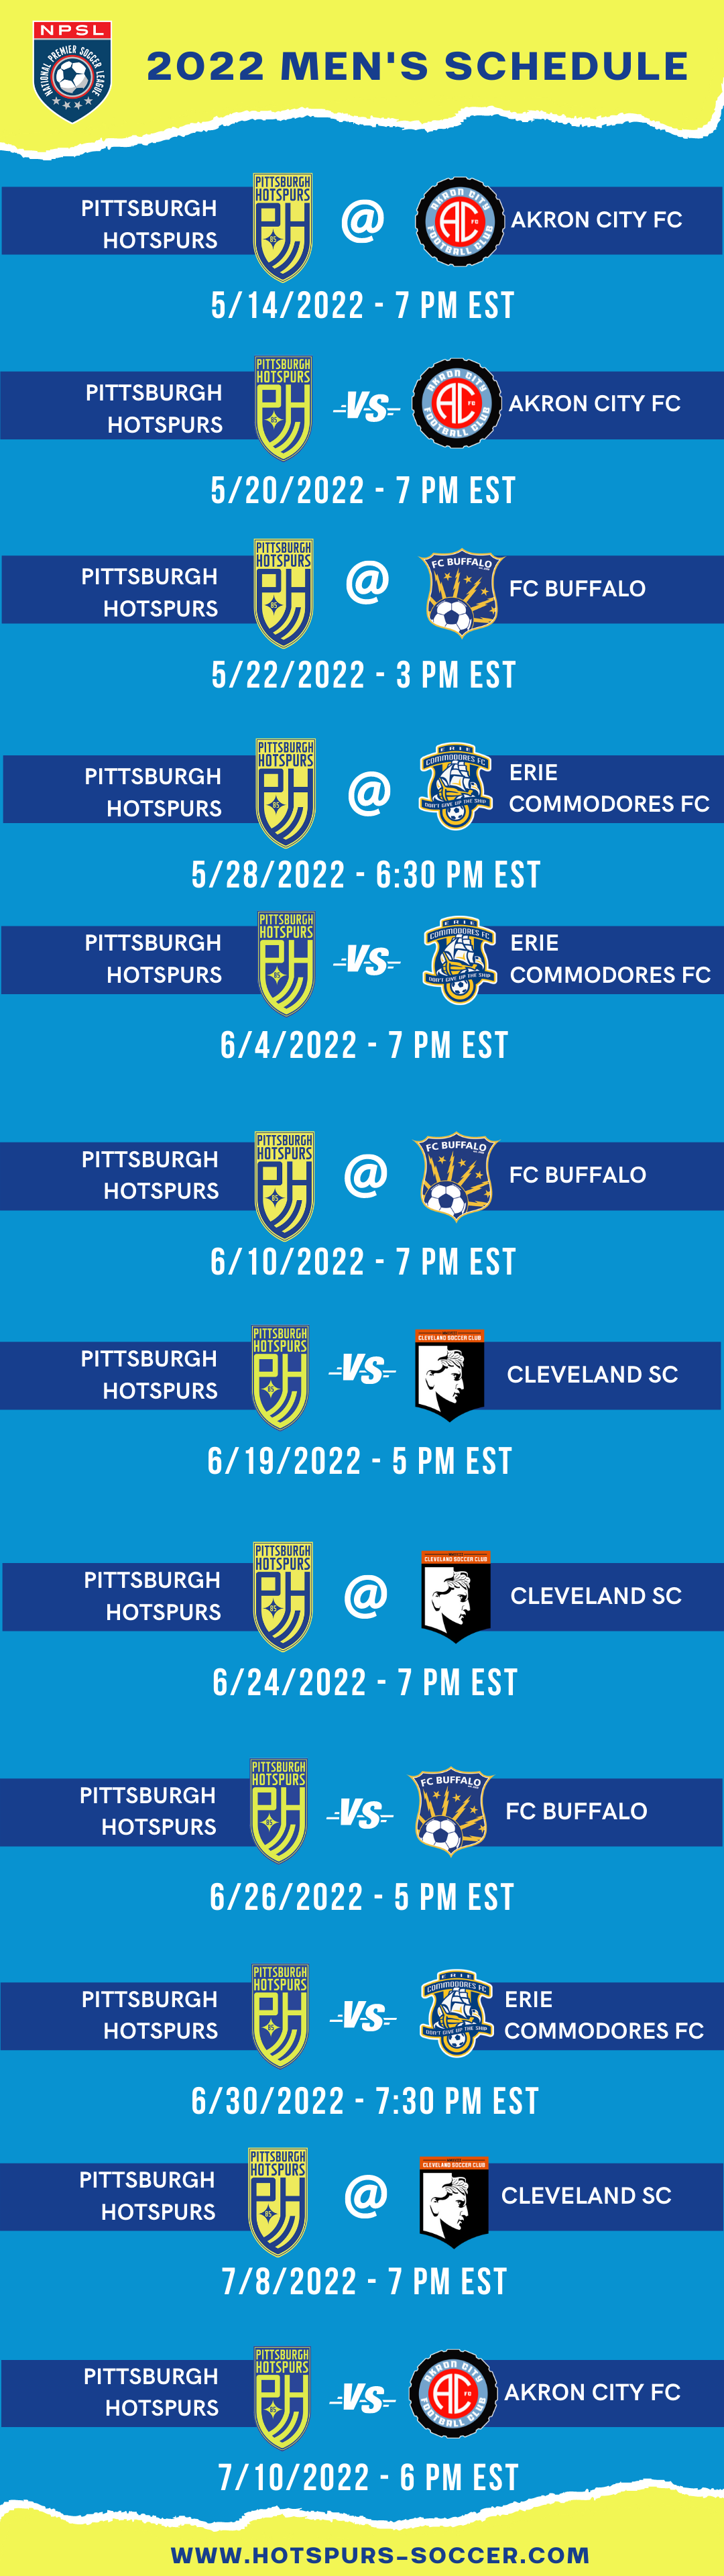 Pittsburgh Hotspurs 2022 Men's Schedule (1)